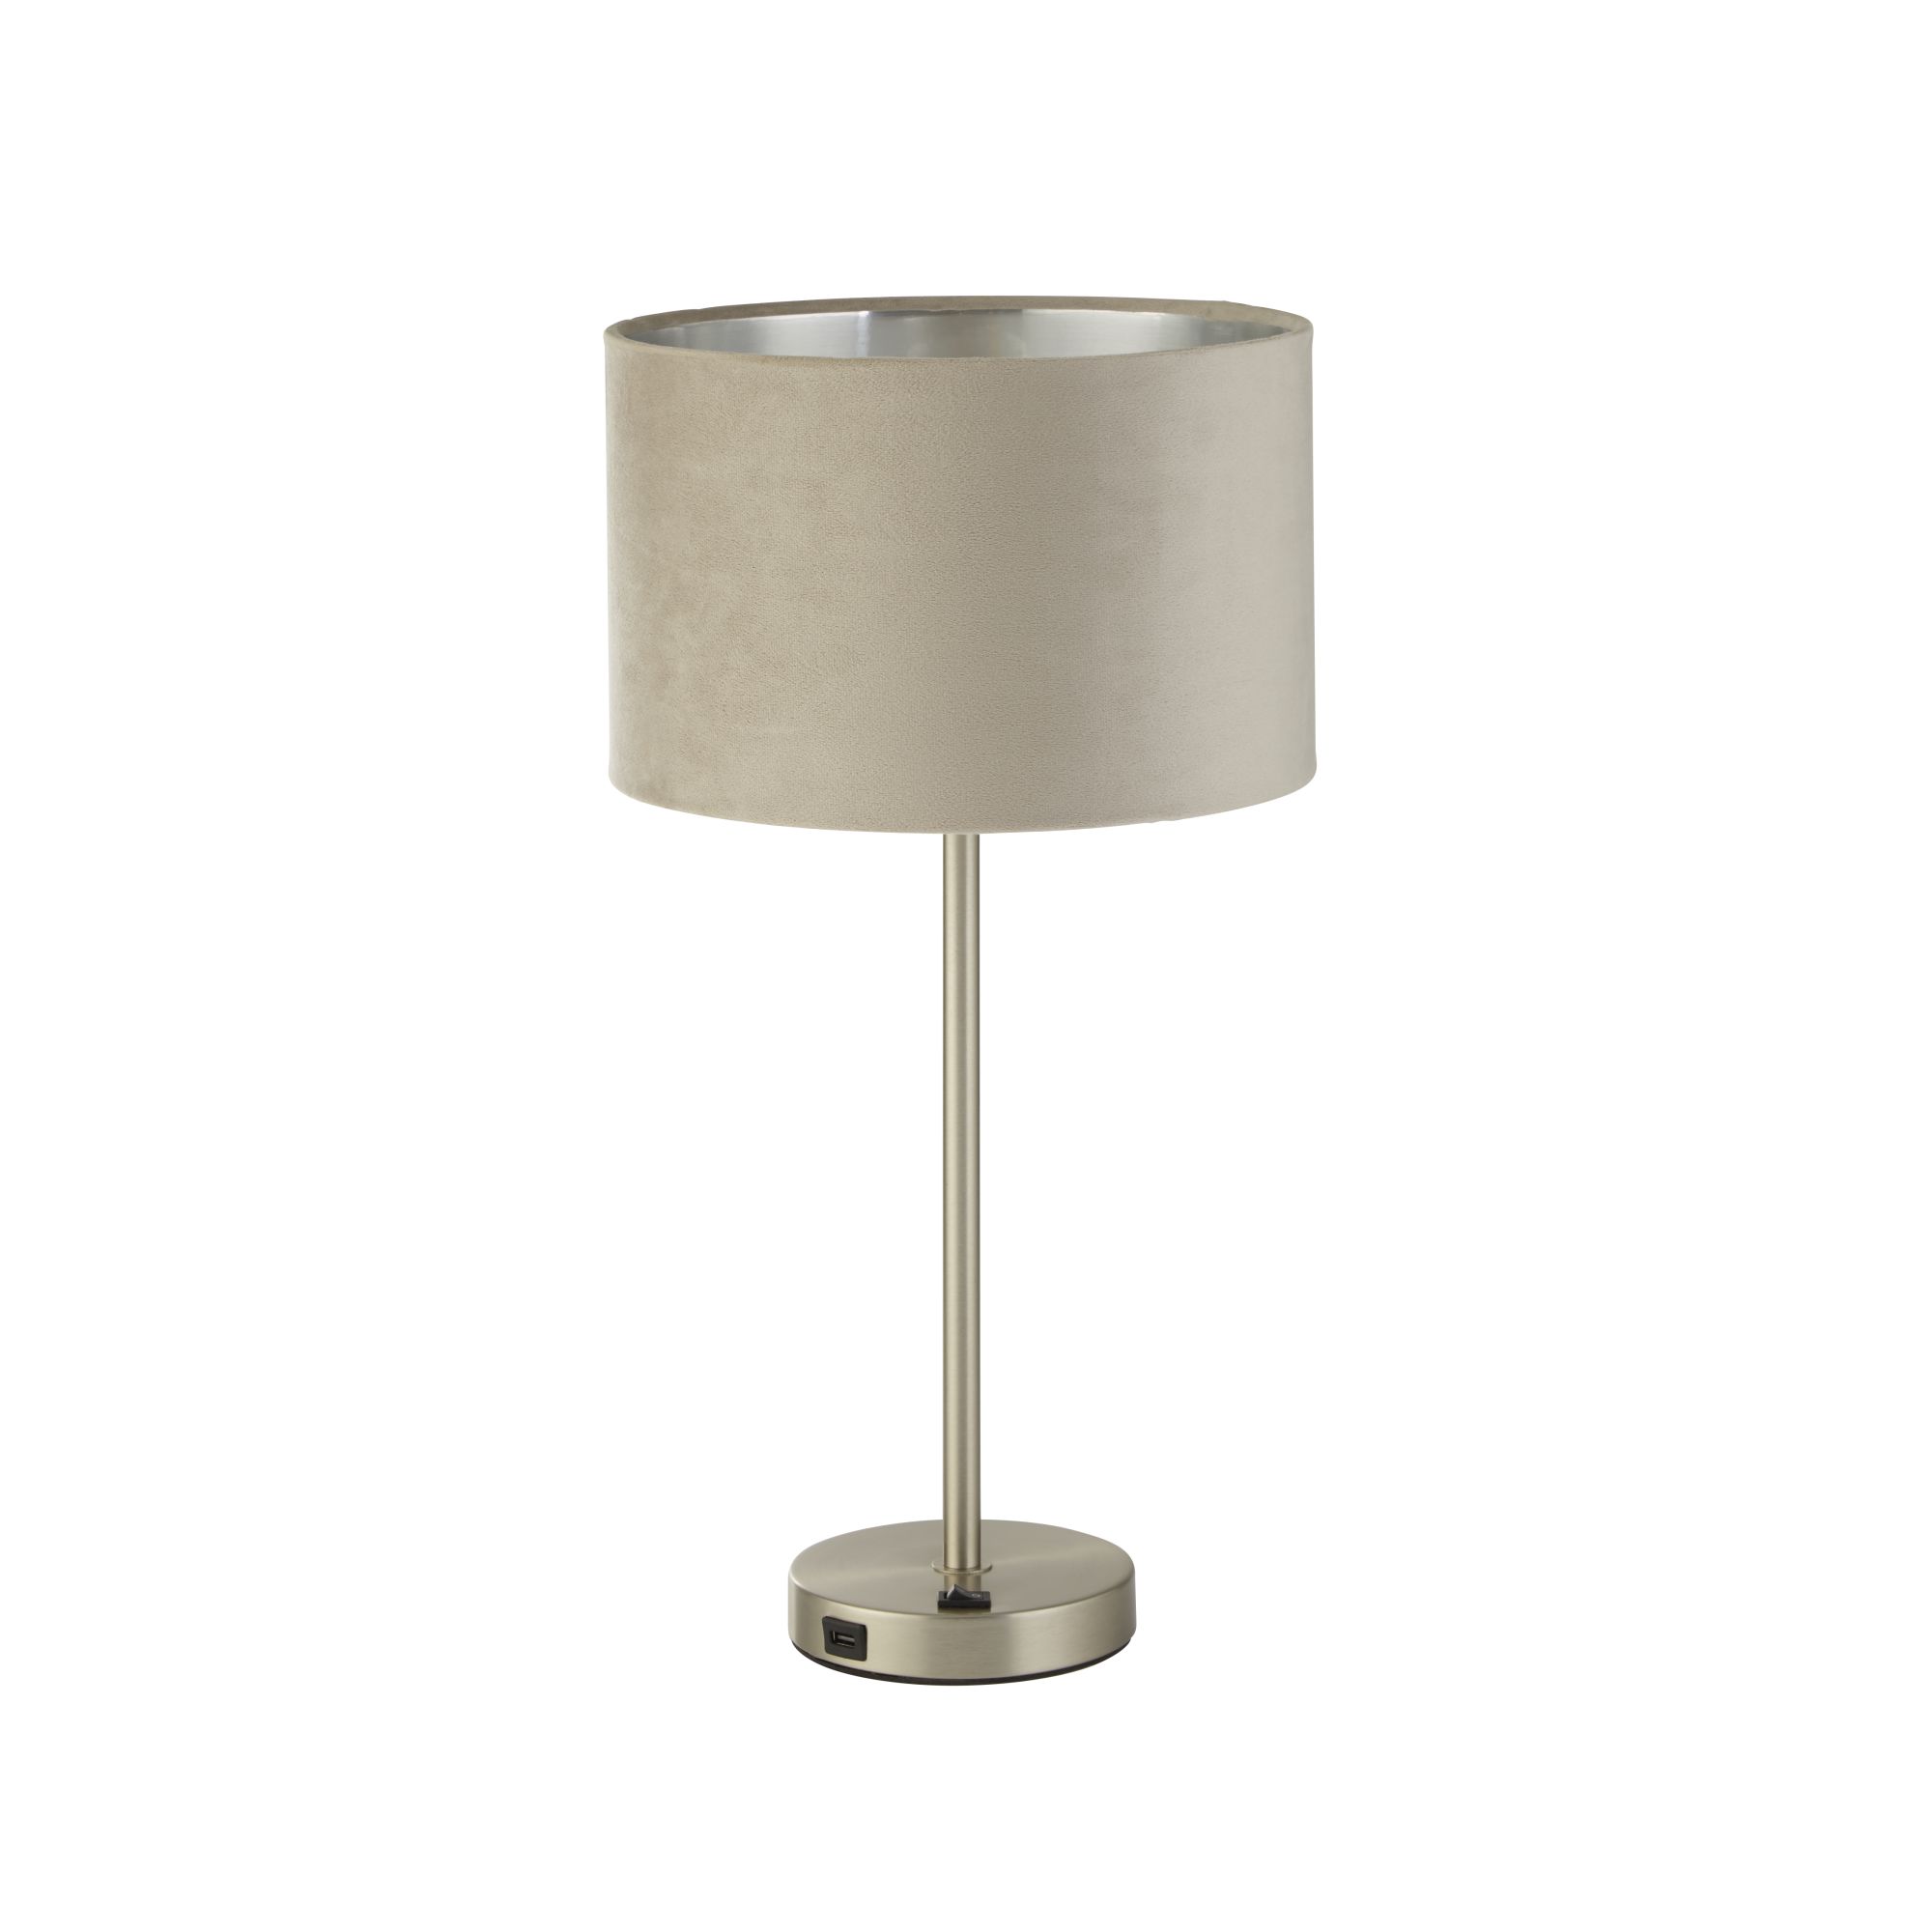 Finn USB Table Lamp -Satin Nickel Metal & Taupe Velvet Shade